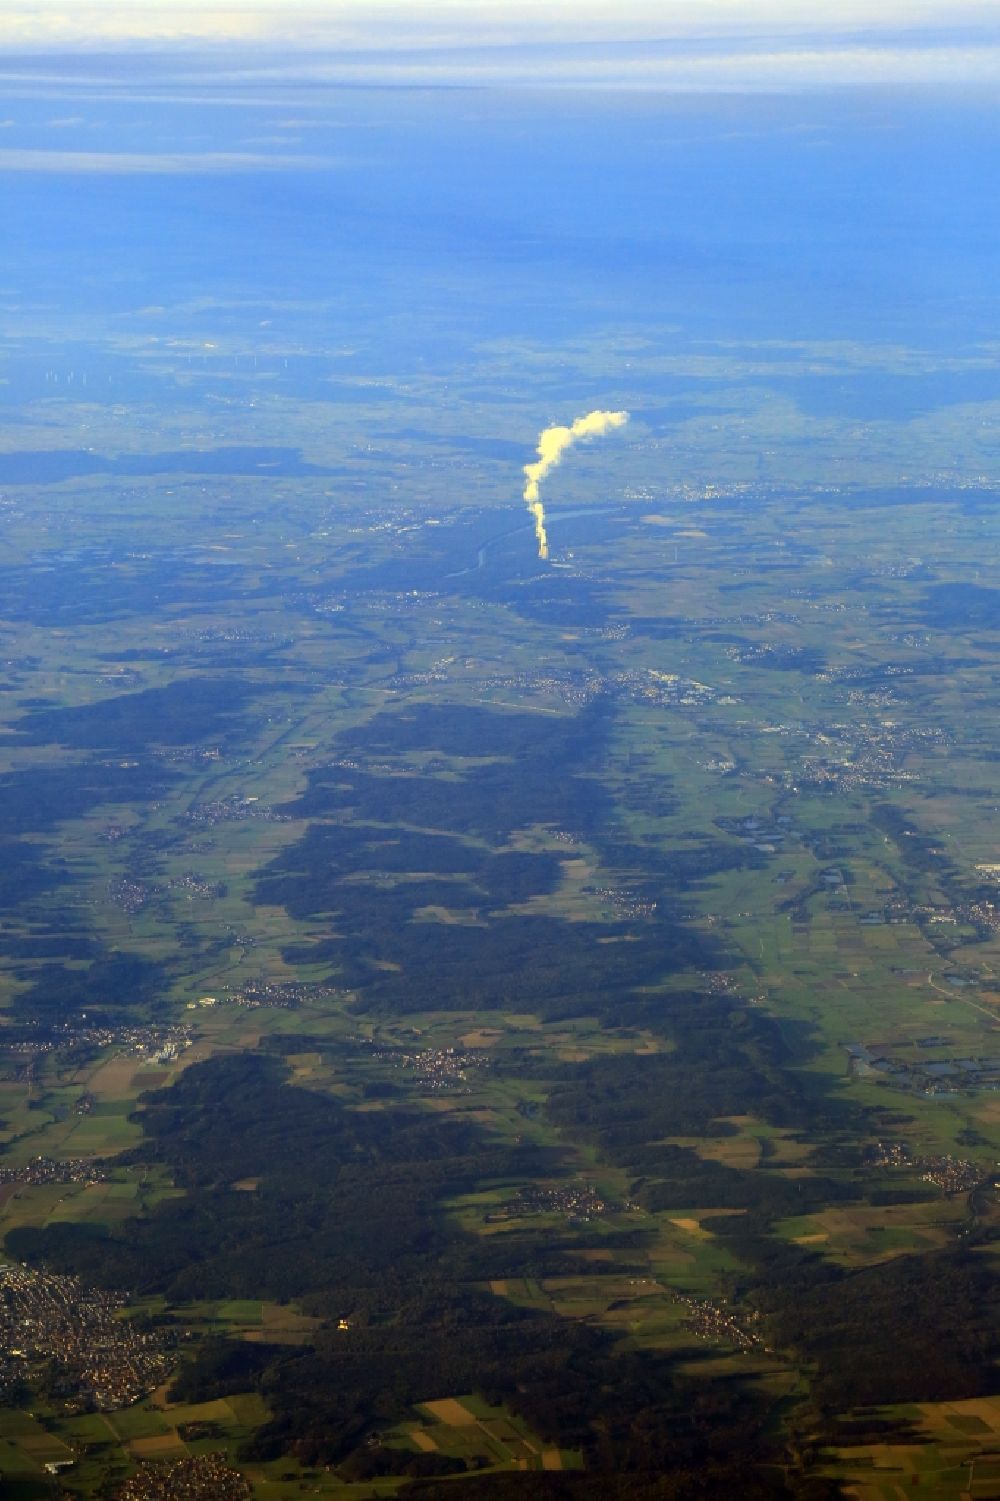 Luftbild Gundremmingen - Landschaft im Landkreis Günzburg mit der Dampffahne des AKW - KKW Kernkraftwerk Gundremmingen im Bundesland Bayern, Deutschland